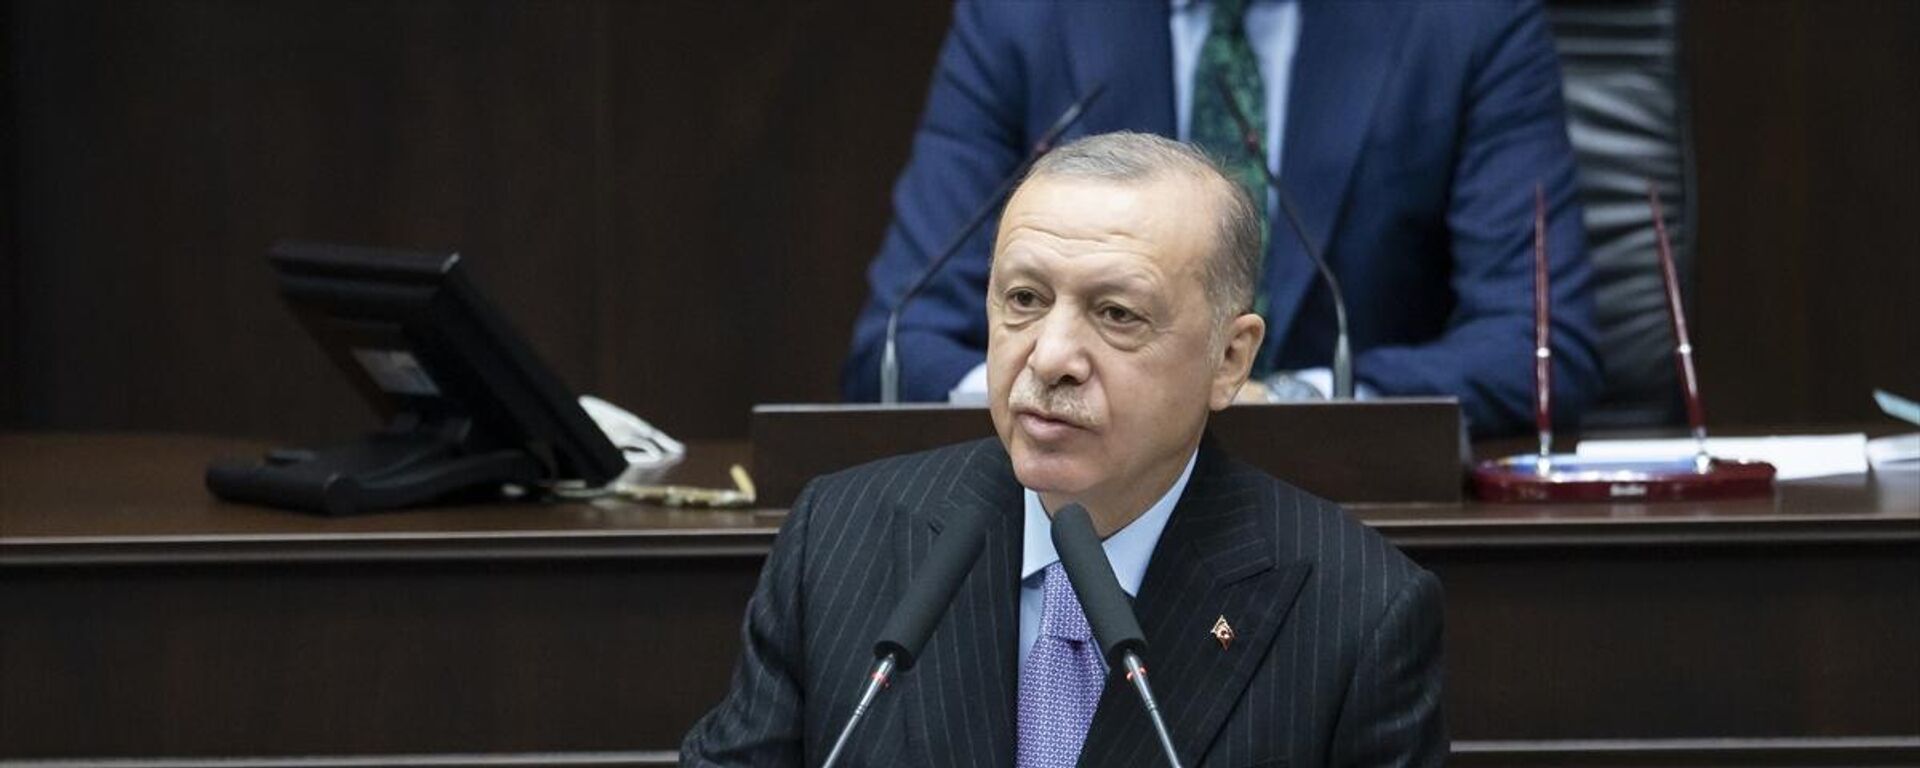 Cumhurbaşkanı Recep Tayyip Erdoğan, partisinin grup toplantısında konuştu - Sputnik Türkiye, 1920, 01.12.2021